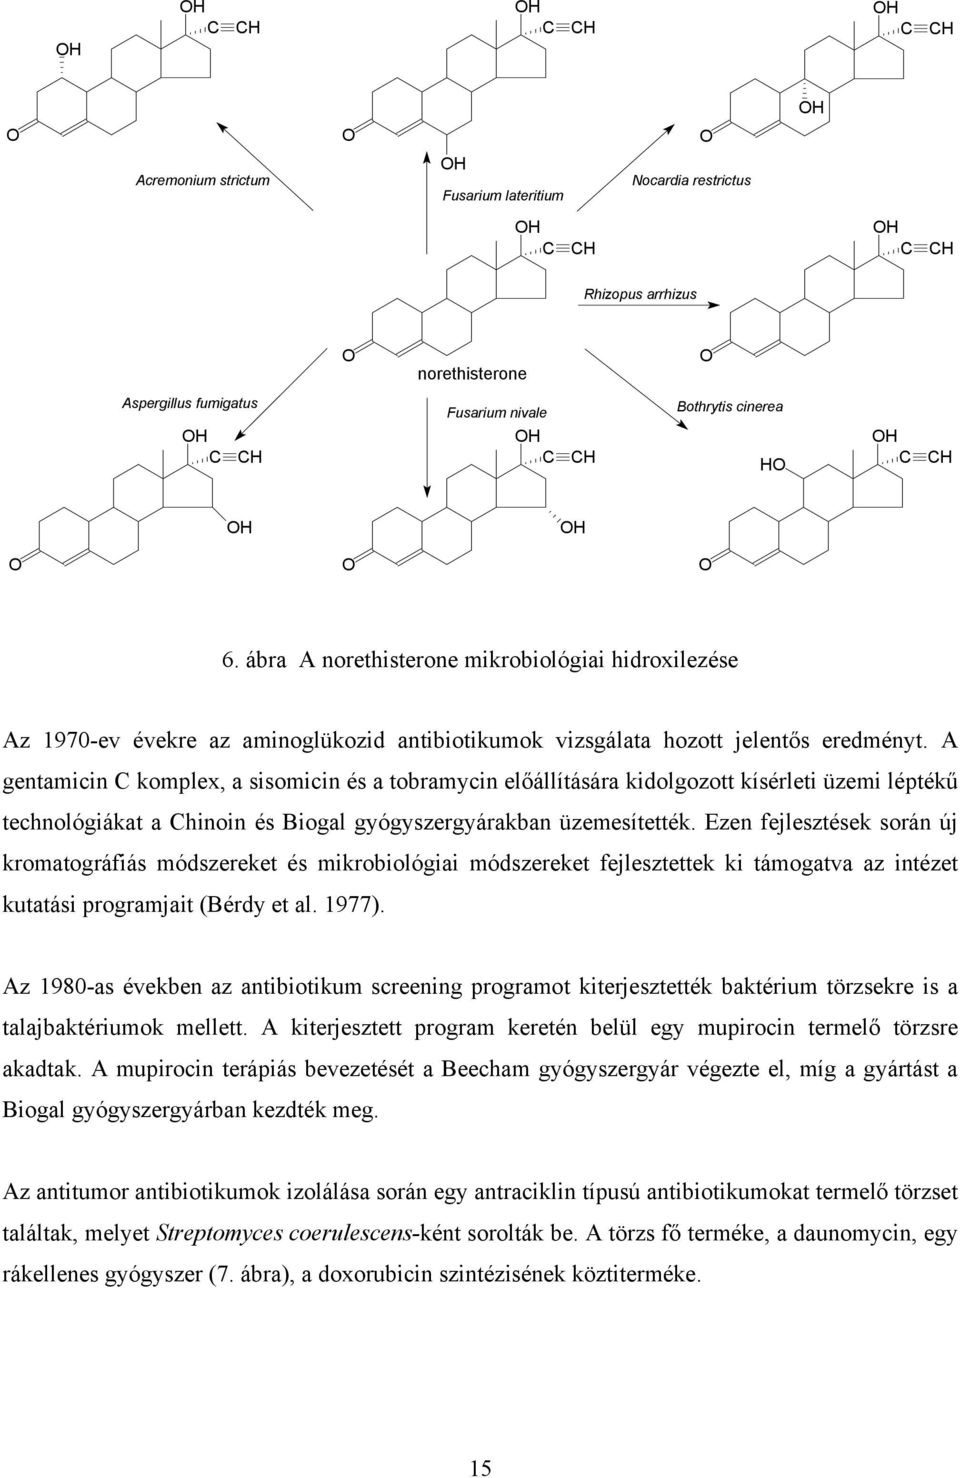 A gentamicin C komplex, a sisomicin és a tobramycin előállítására kidolgozott kísérleti üzemi léptékű technológiákat a Chinoin és Biogal gyógyszergyárakban üzemesítették.